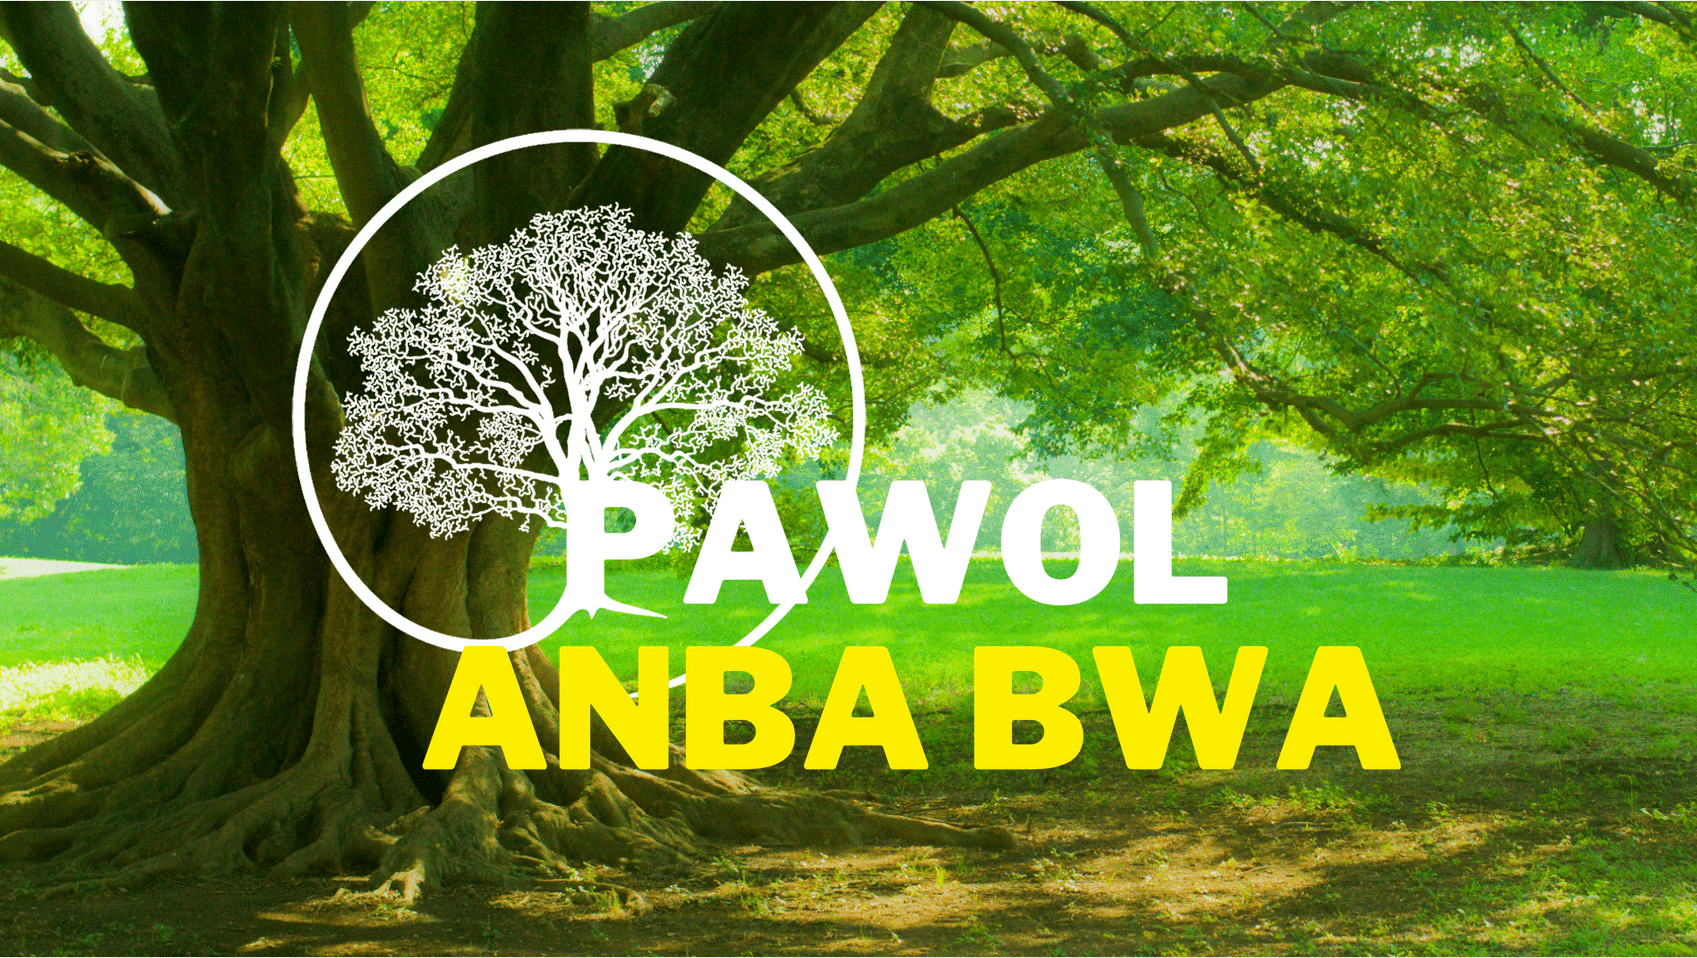 Pawol Anba Bwa